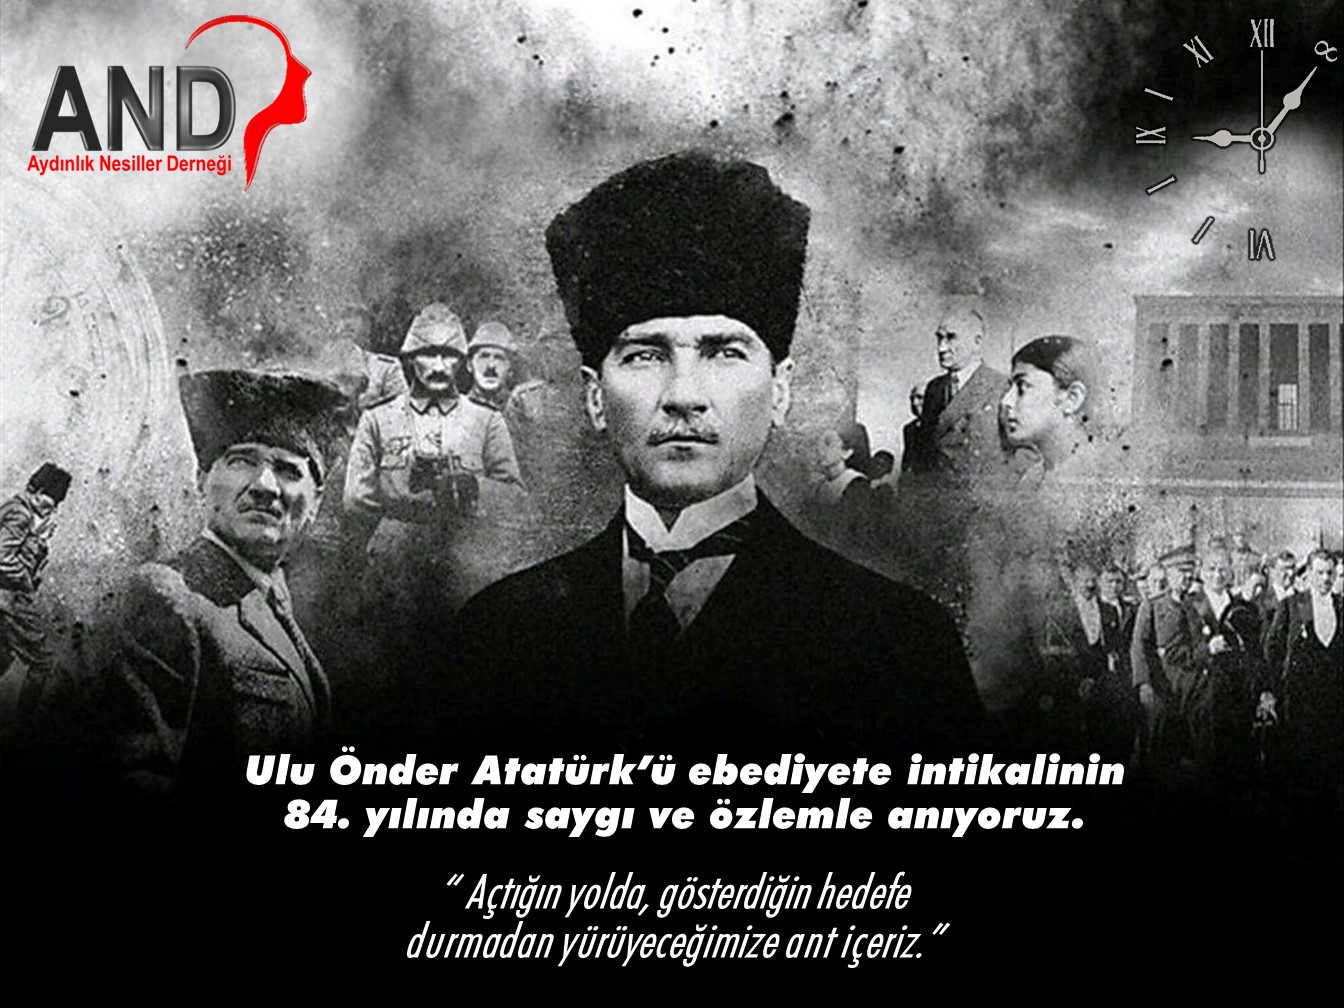 Ulu Önder Atatürk’ün, aramızdan ayrılışının 84. yılındayız